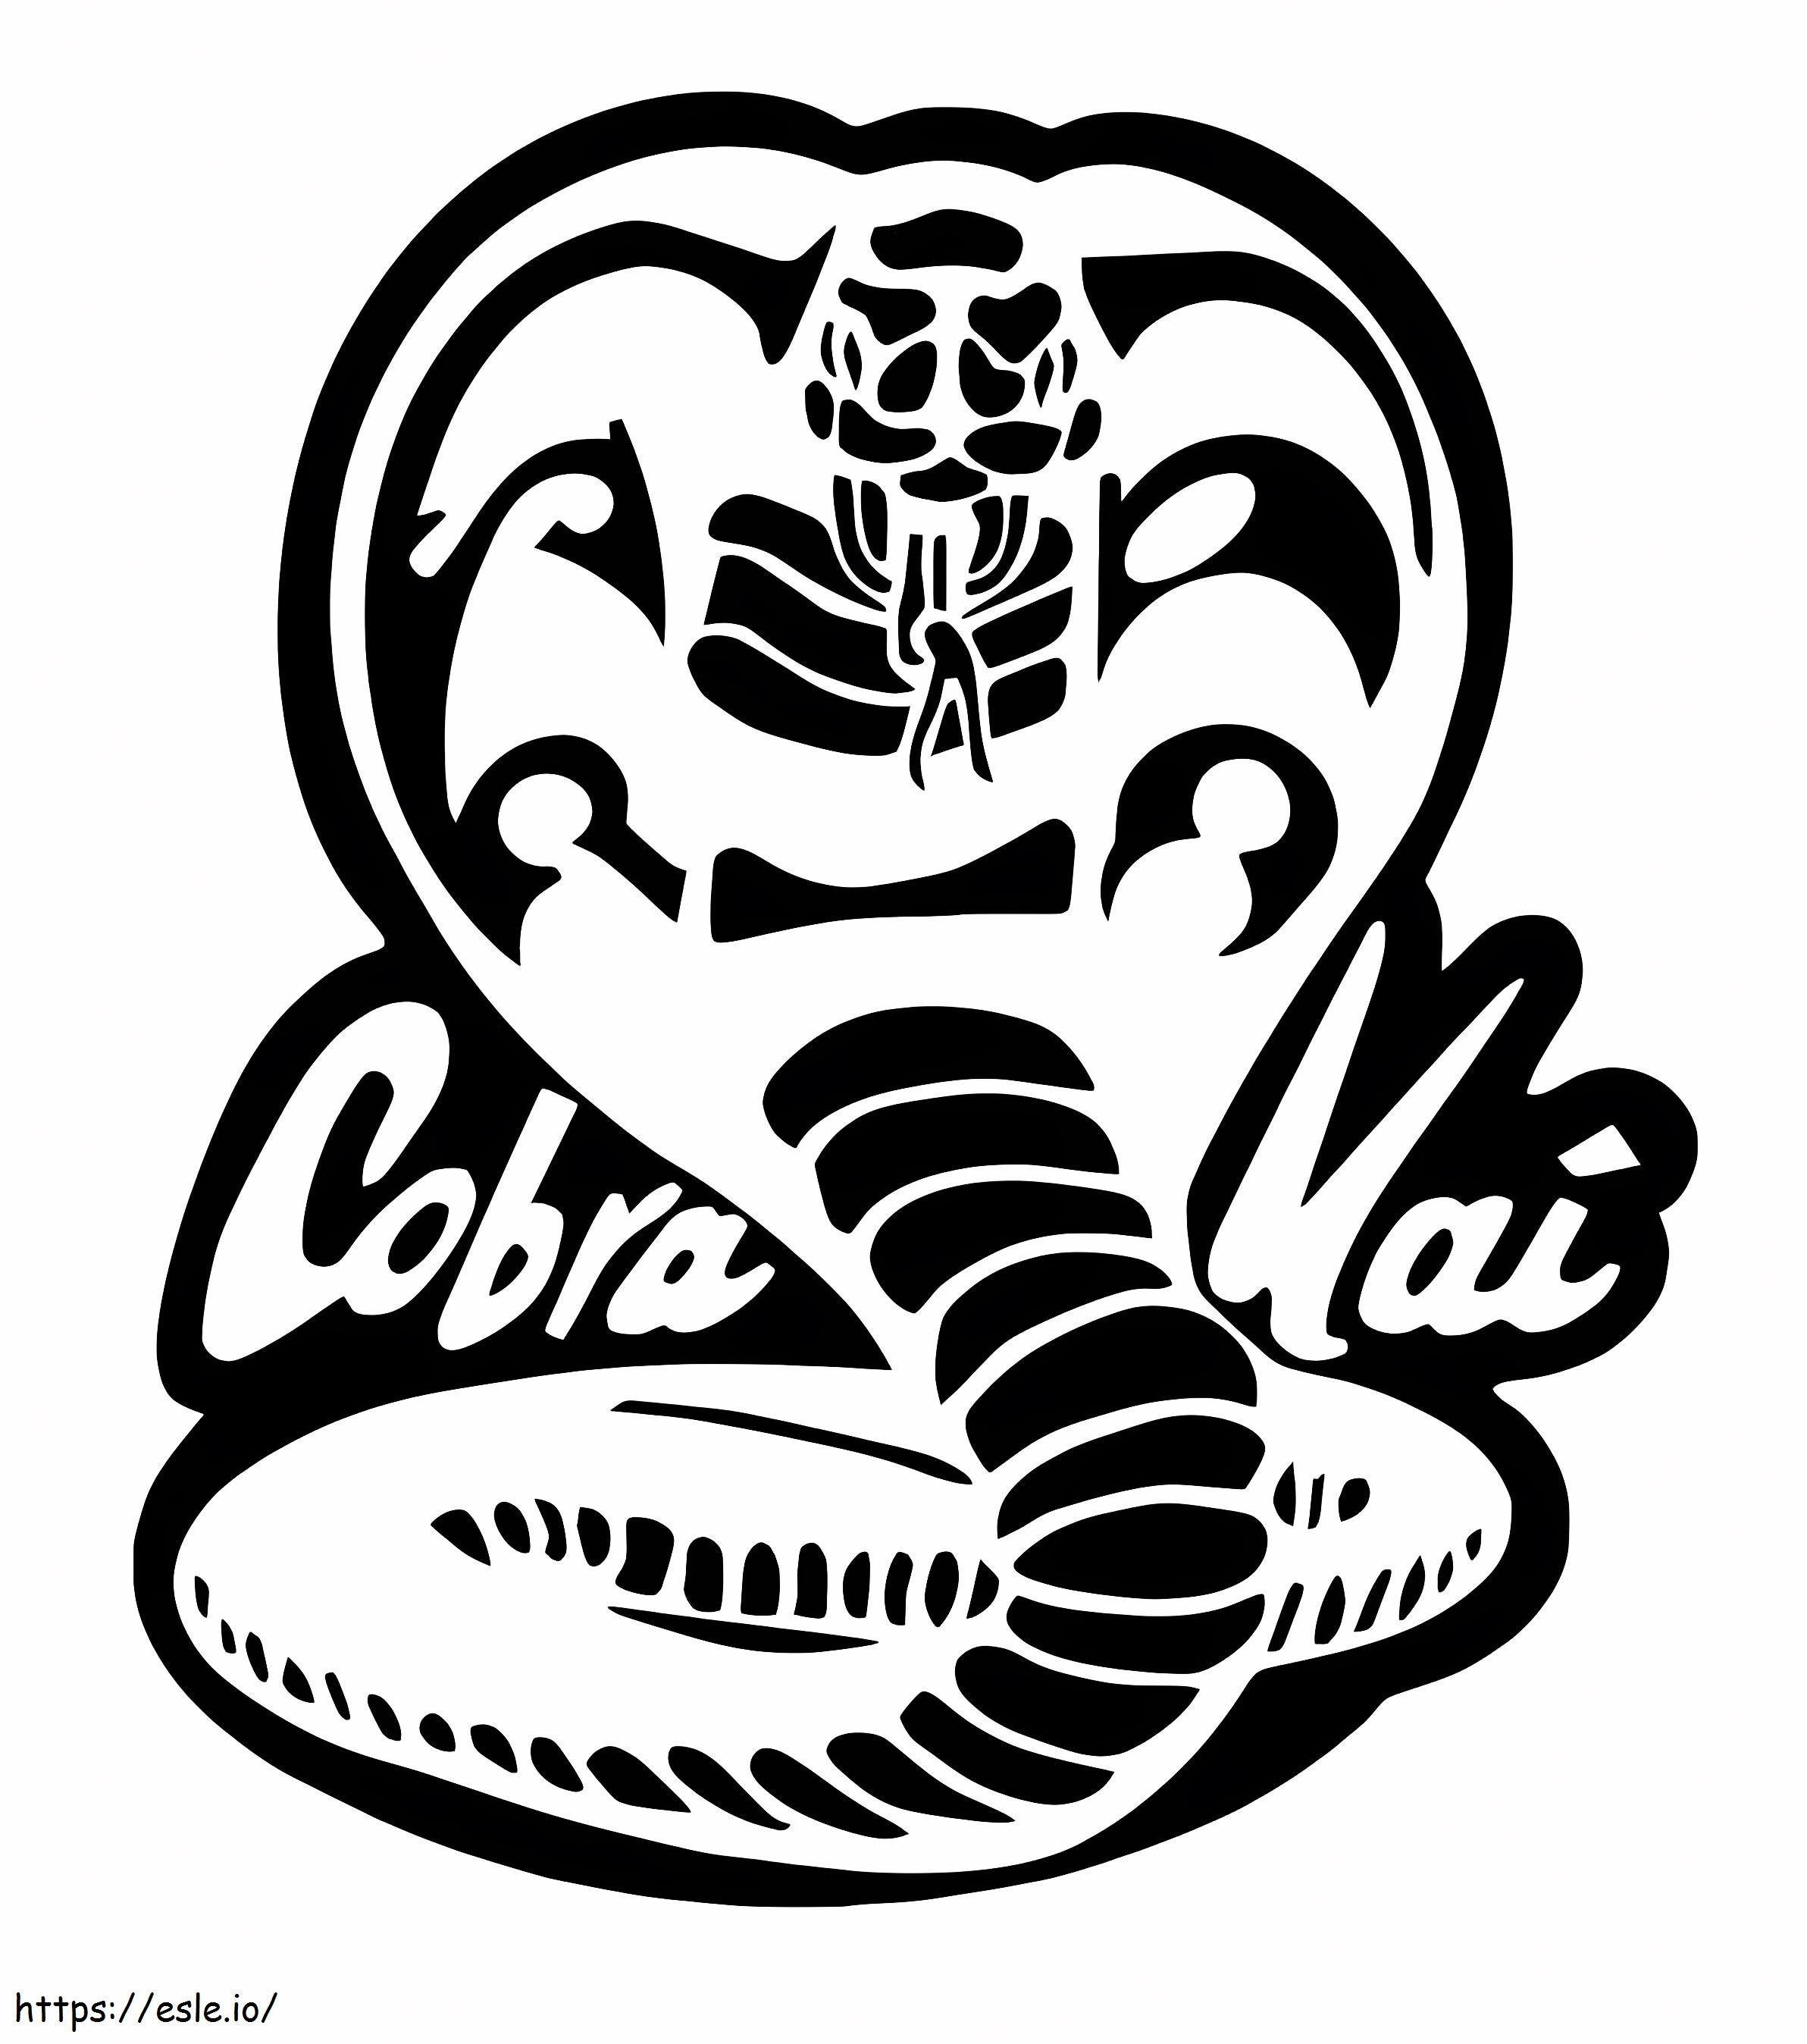 Kobra Kai Logosu boyama